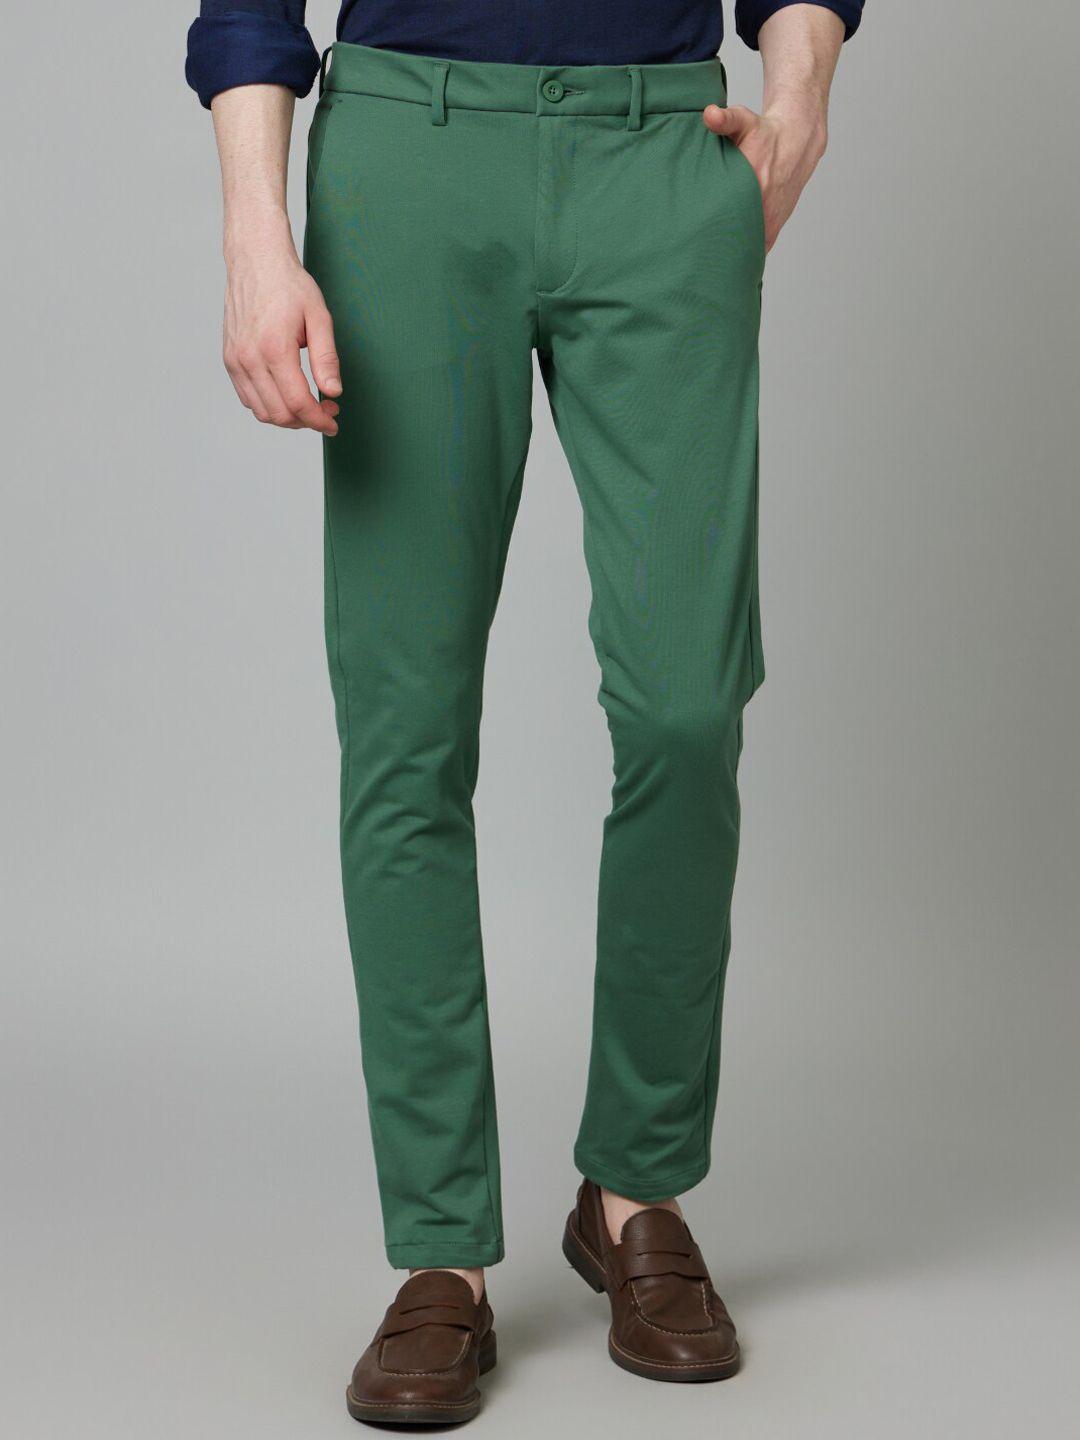 celio-men-mid-rise-plain-cotton-slim-fit-chinos-trousers